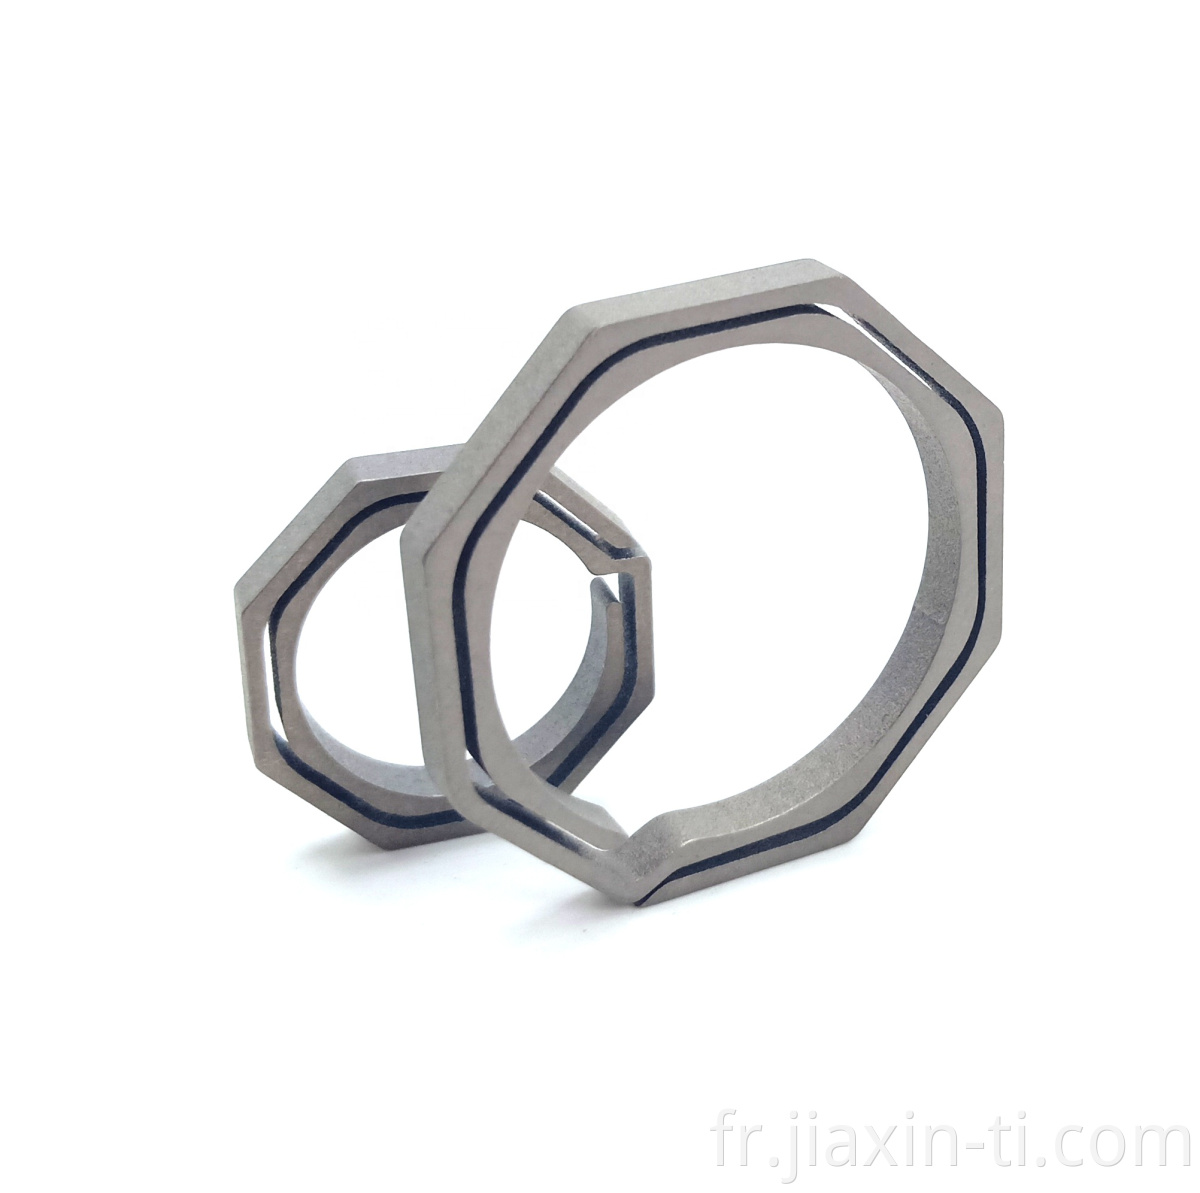 titanium key ring